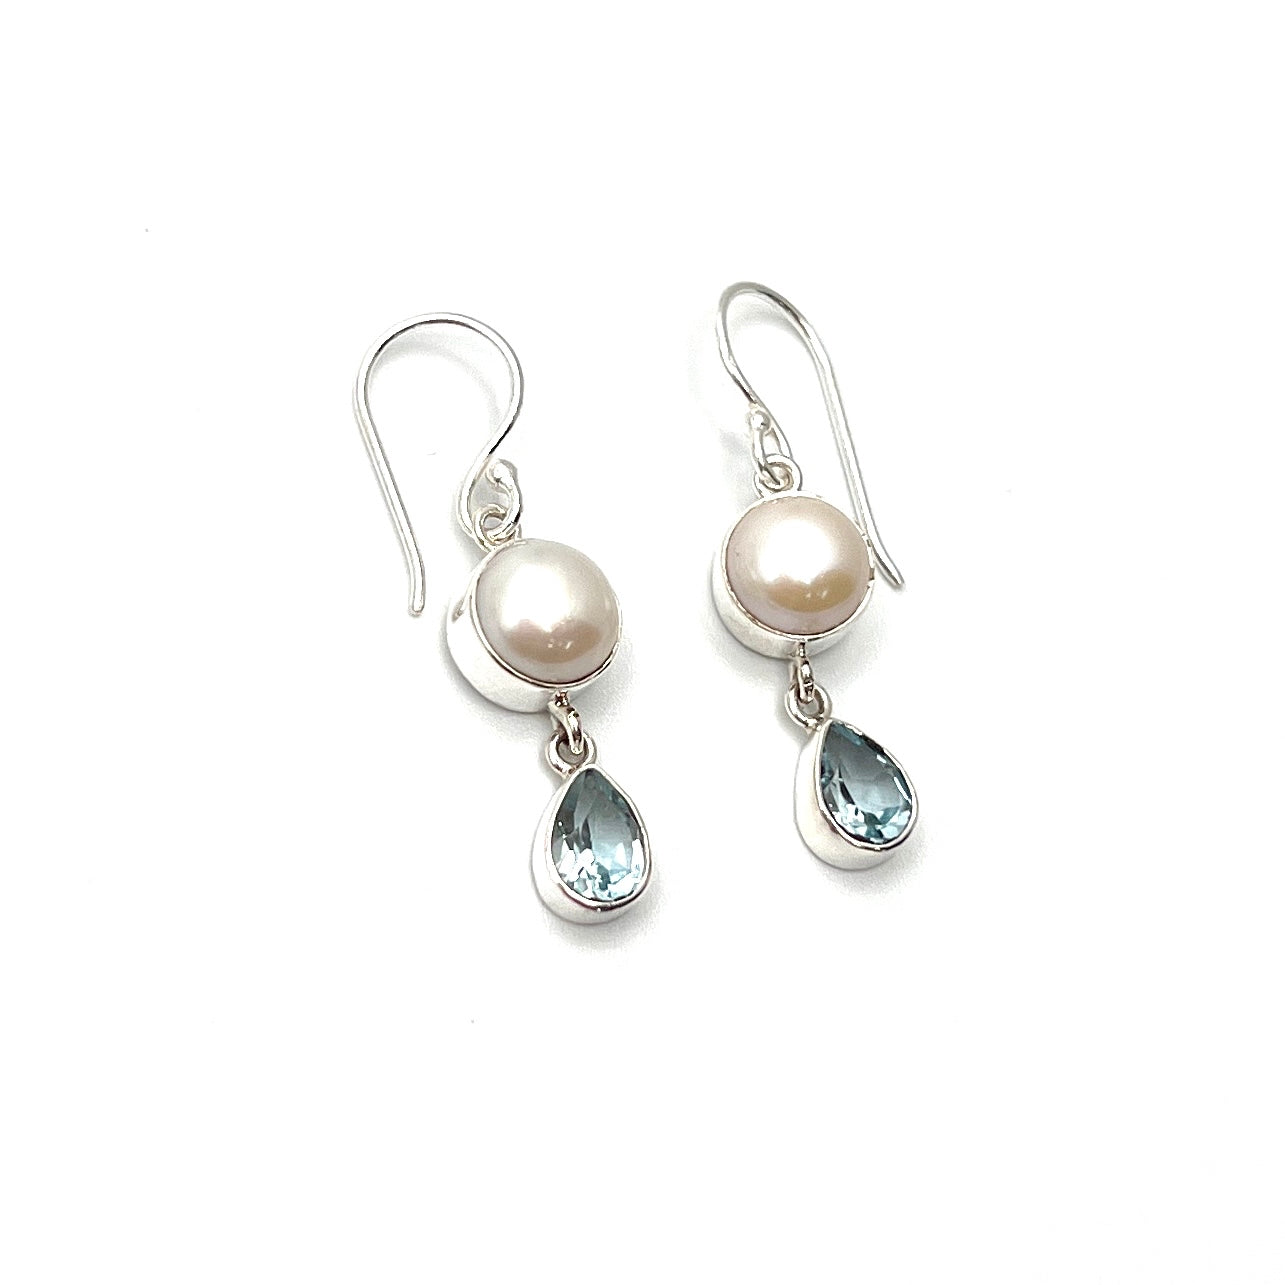 Sterling Silver Pearl & Blue Topaz Earrings